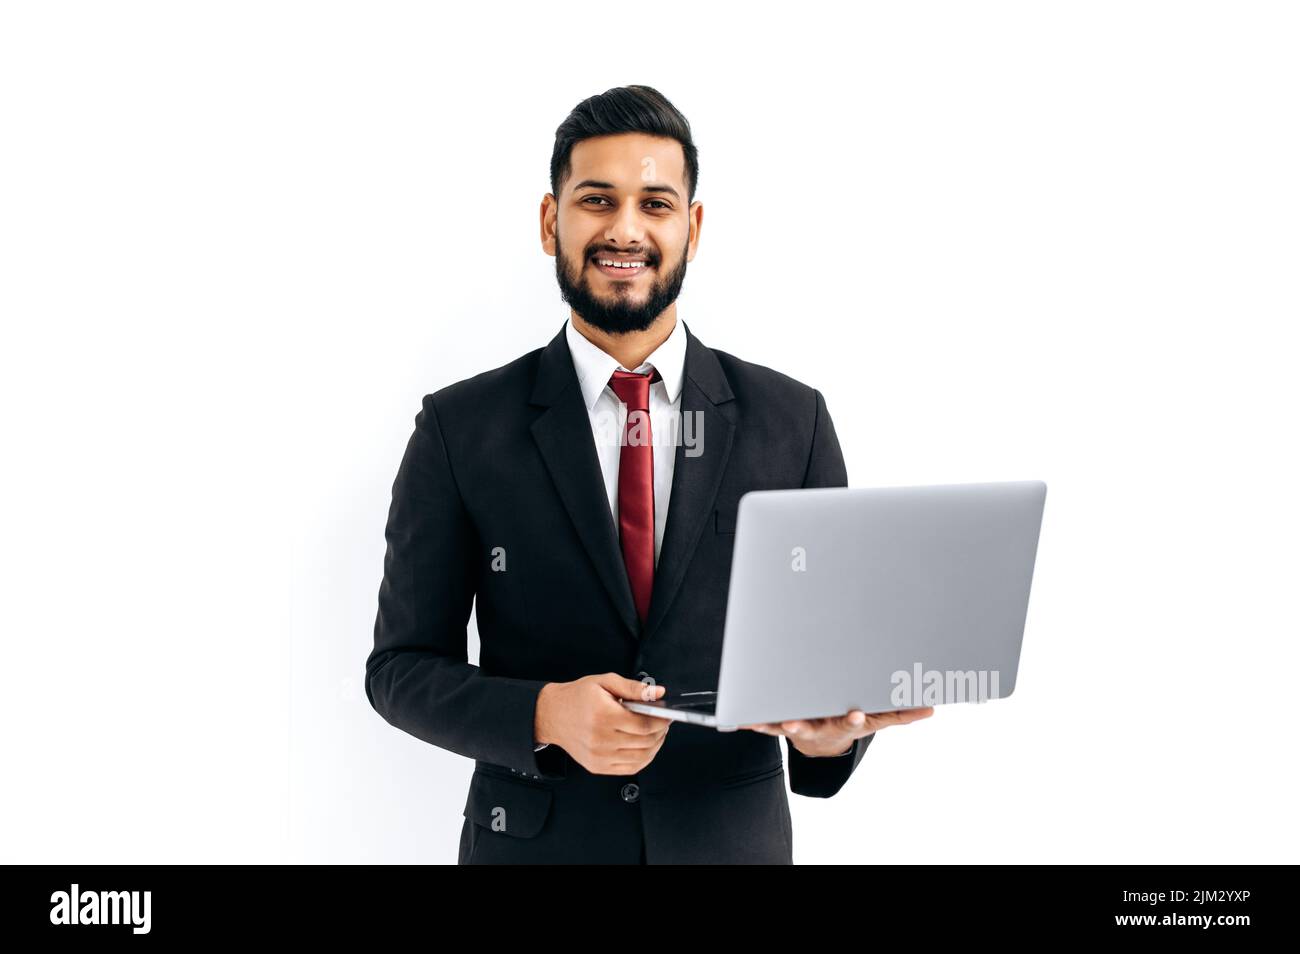 Positiv elegant attraktiver indischer oder arabischer Mann im Business-Anzug, Unternehmer, der einen offenen Laptop in den Händen hält, die Kamera anschaut, auf einem isolierten weißen Hintergrund steht und freundlich lächelt. Kopierbereich Stockfoto